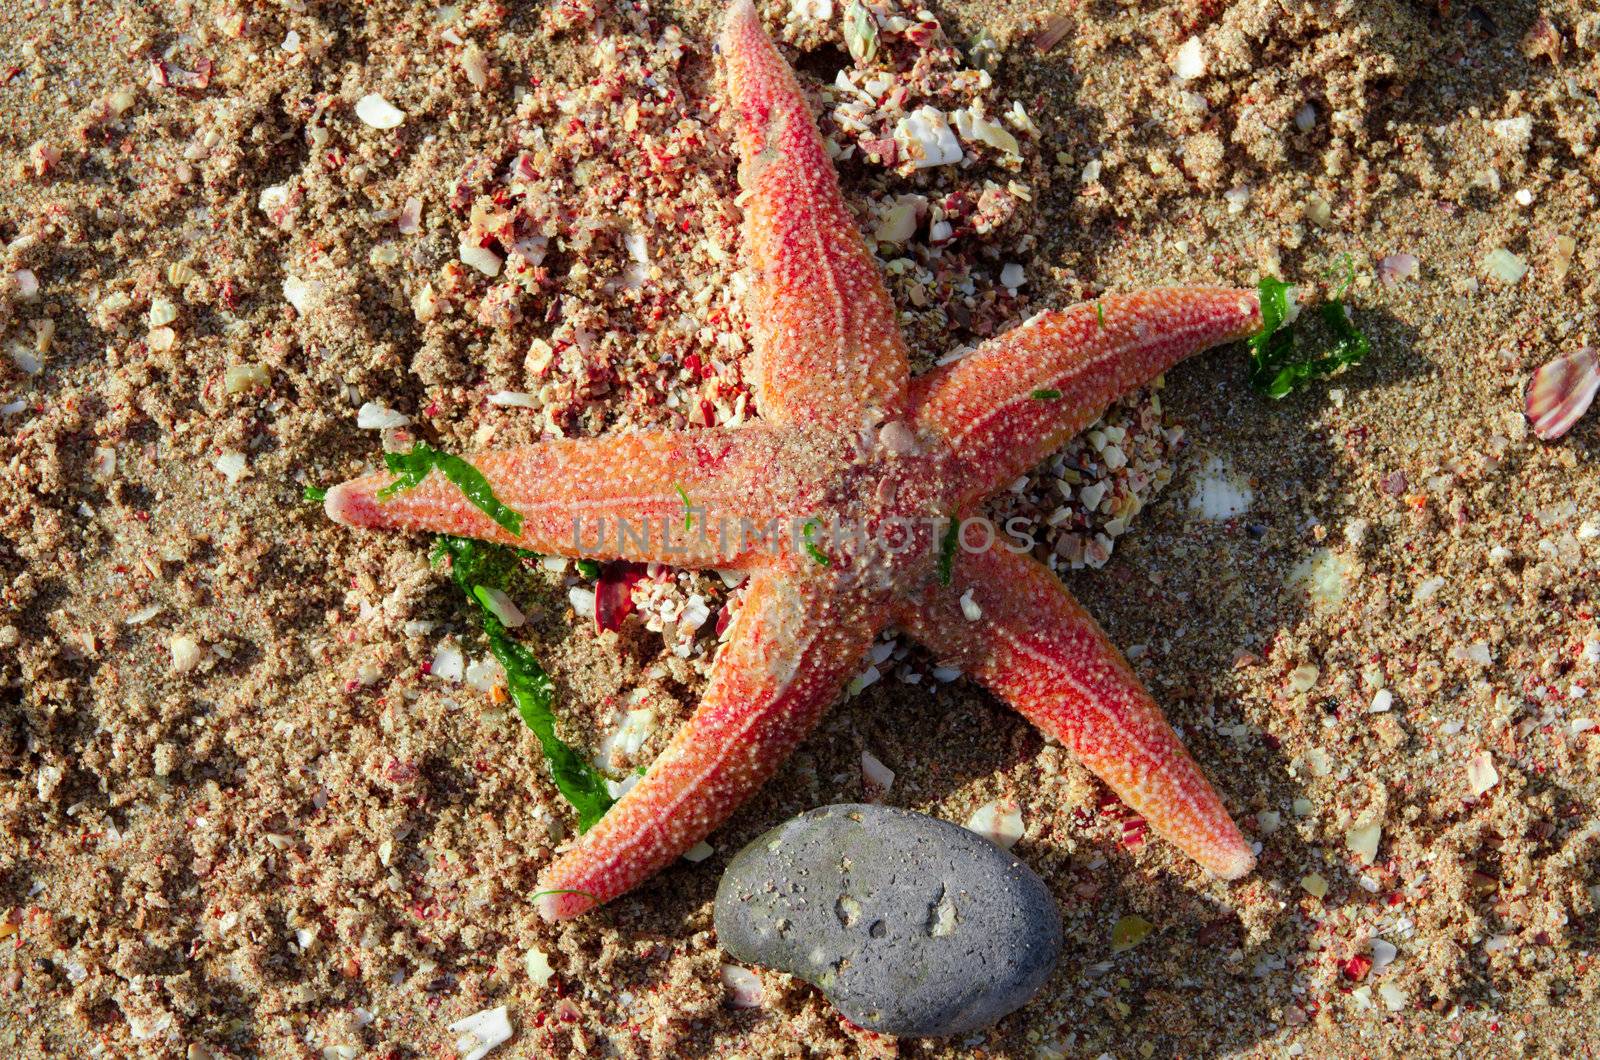 Starfish by Jez22